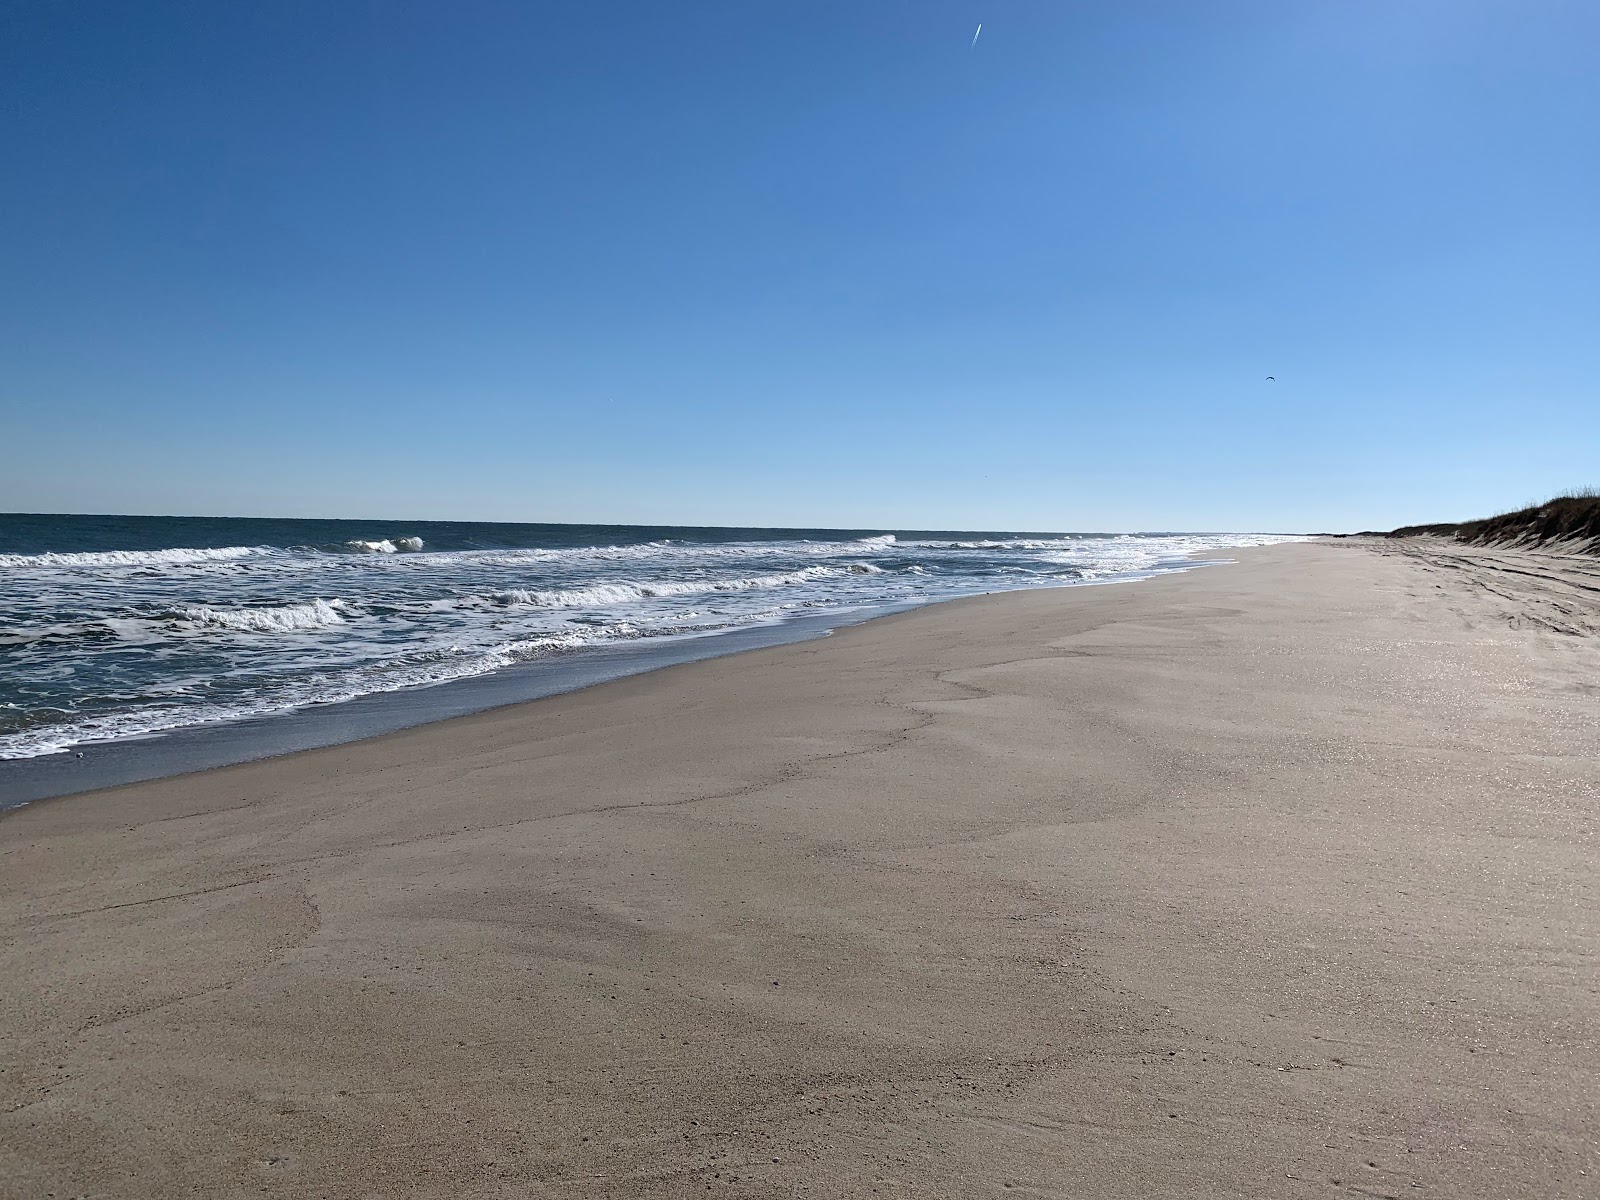 Zdjęcie Fort Fisher beach z przestronna plaża